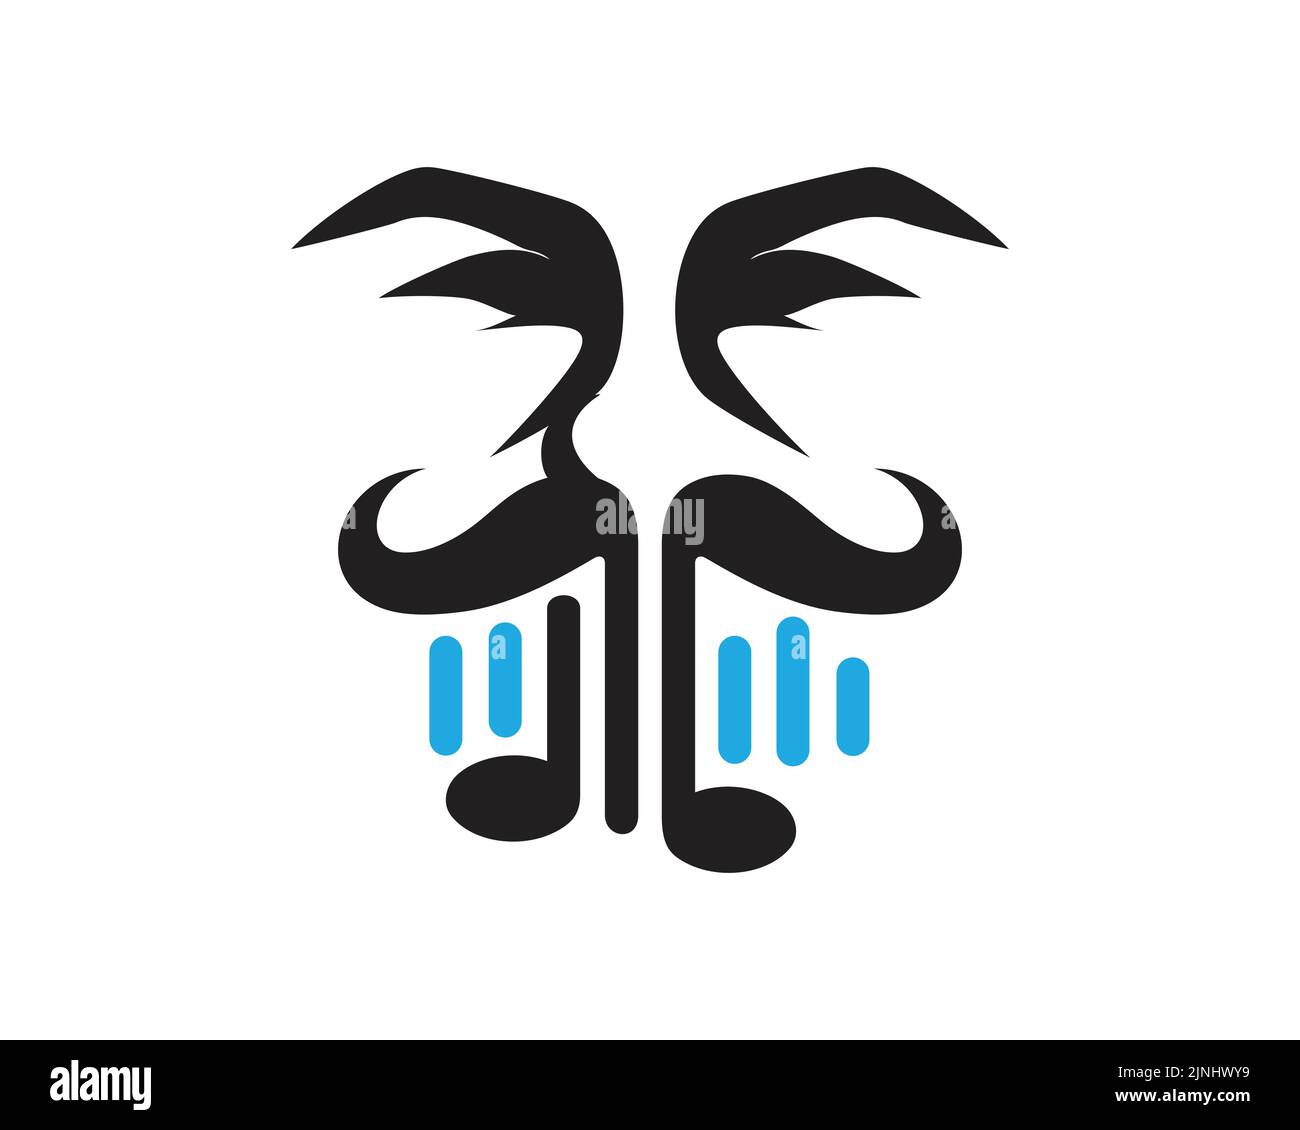 Notazione musicale combinata con Moustache Man Illustration Illustrazione Vettoriale